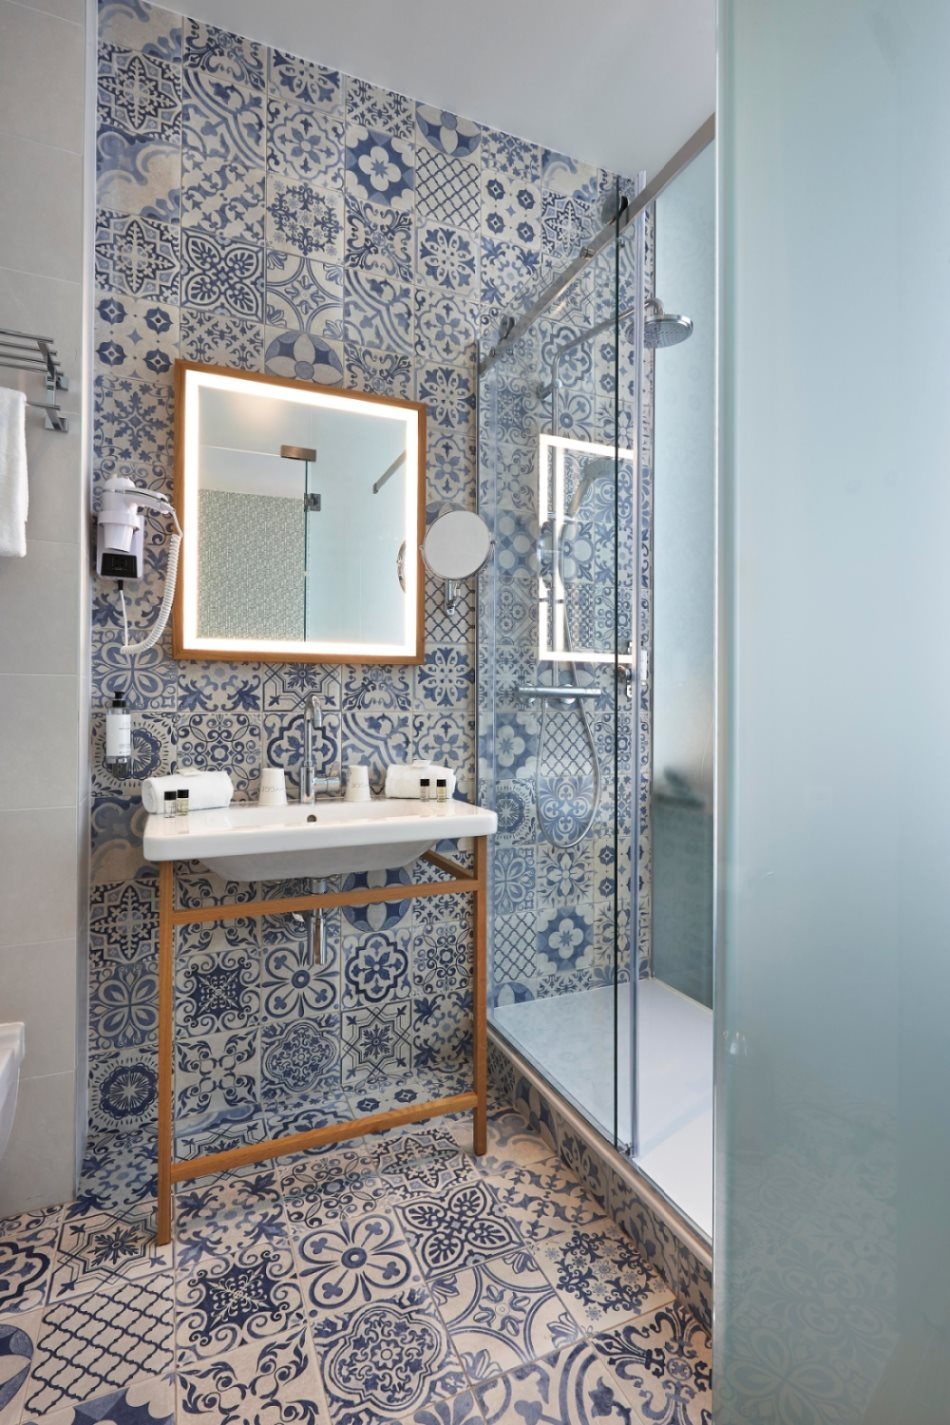 Carreau de ciment bleu motifs variés 45x45 cm dans salle de bain tons bleus blancs, avec douche, miroir, lavabo